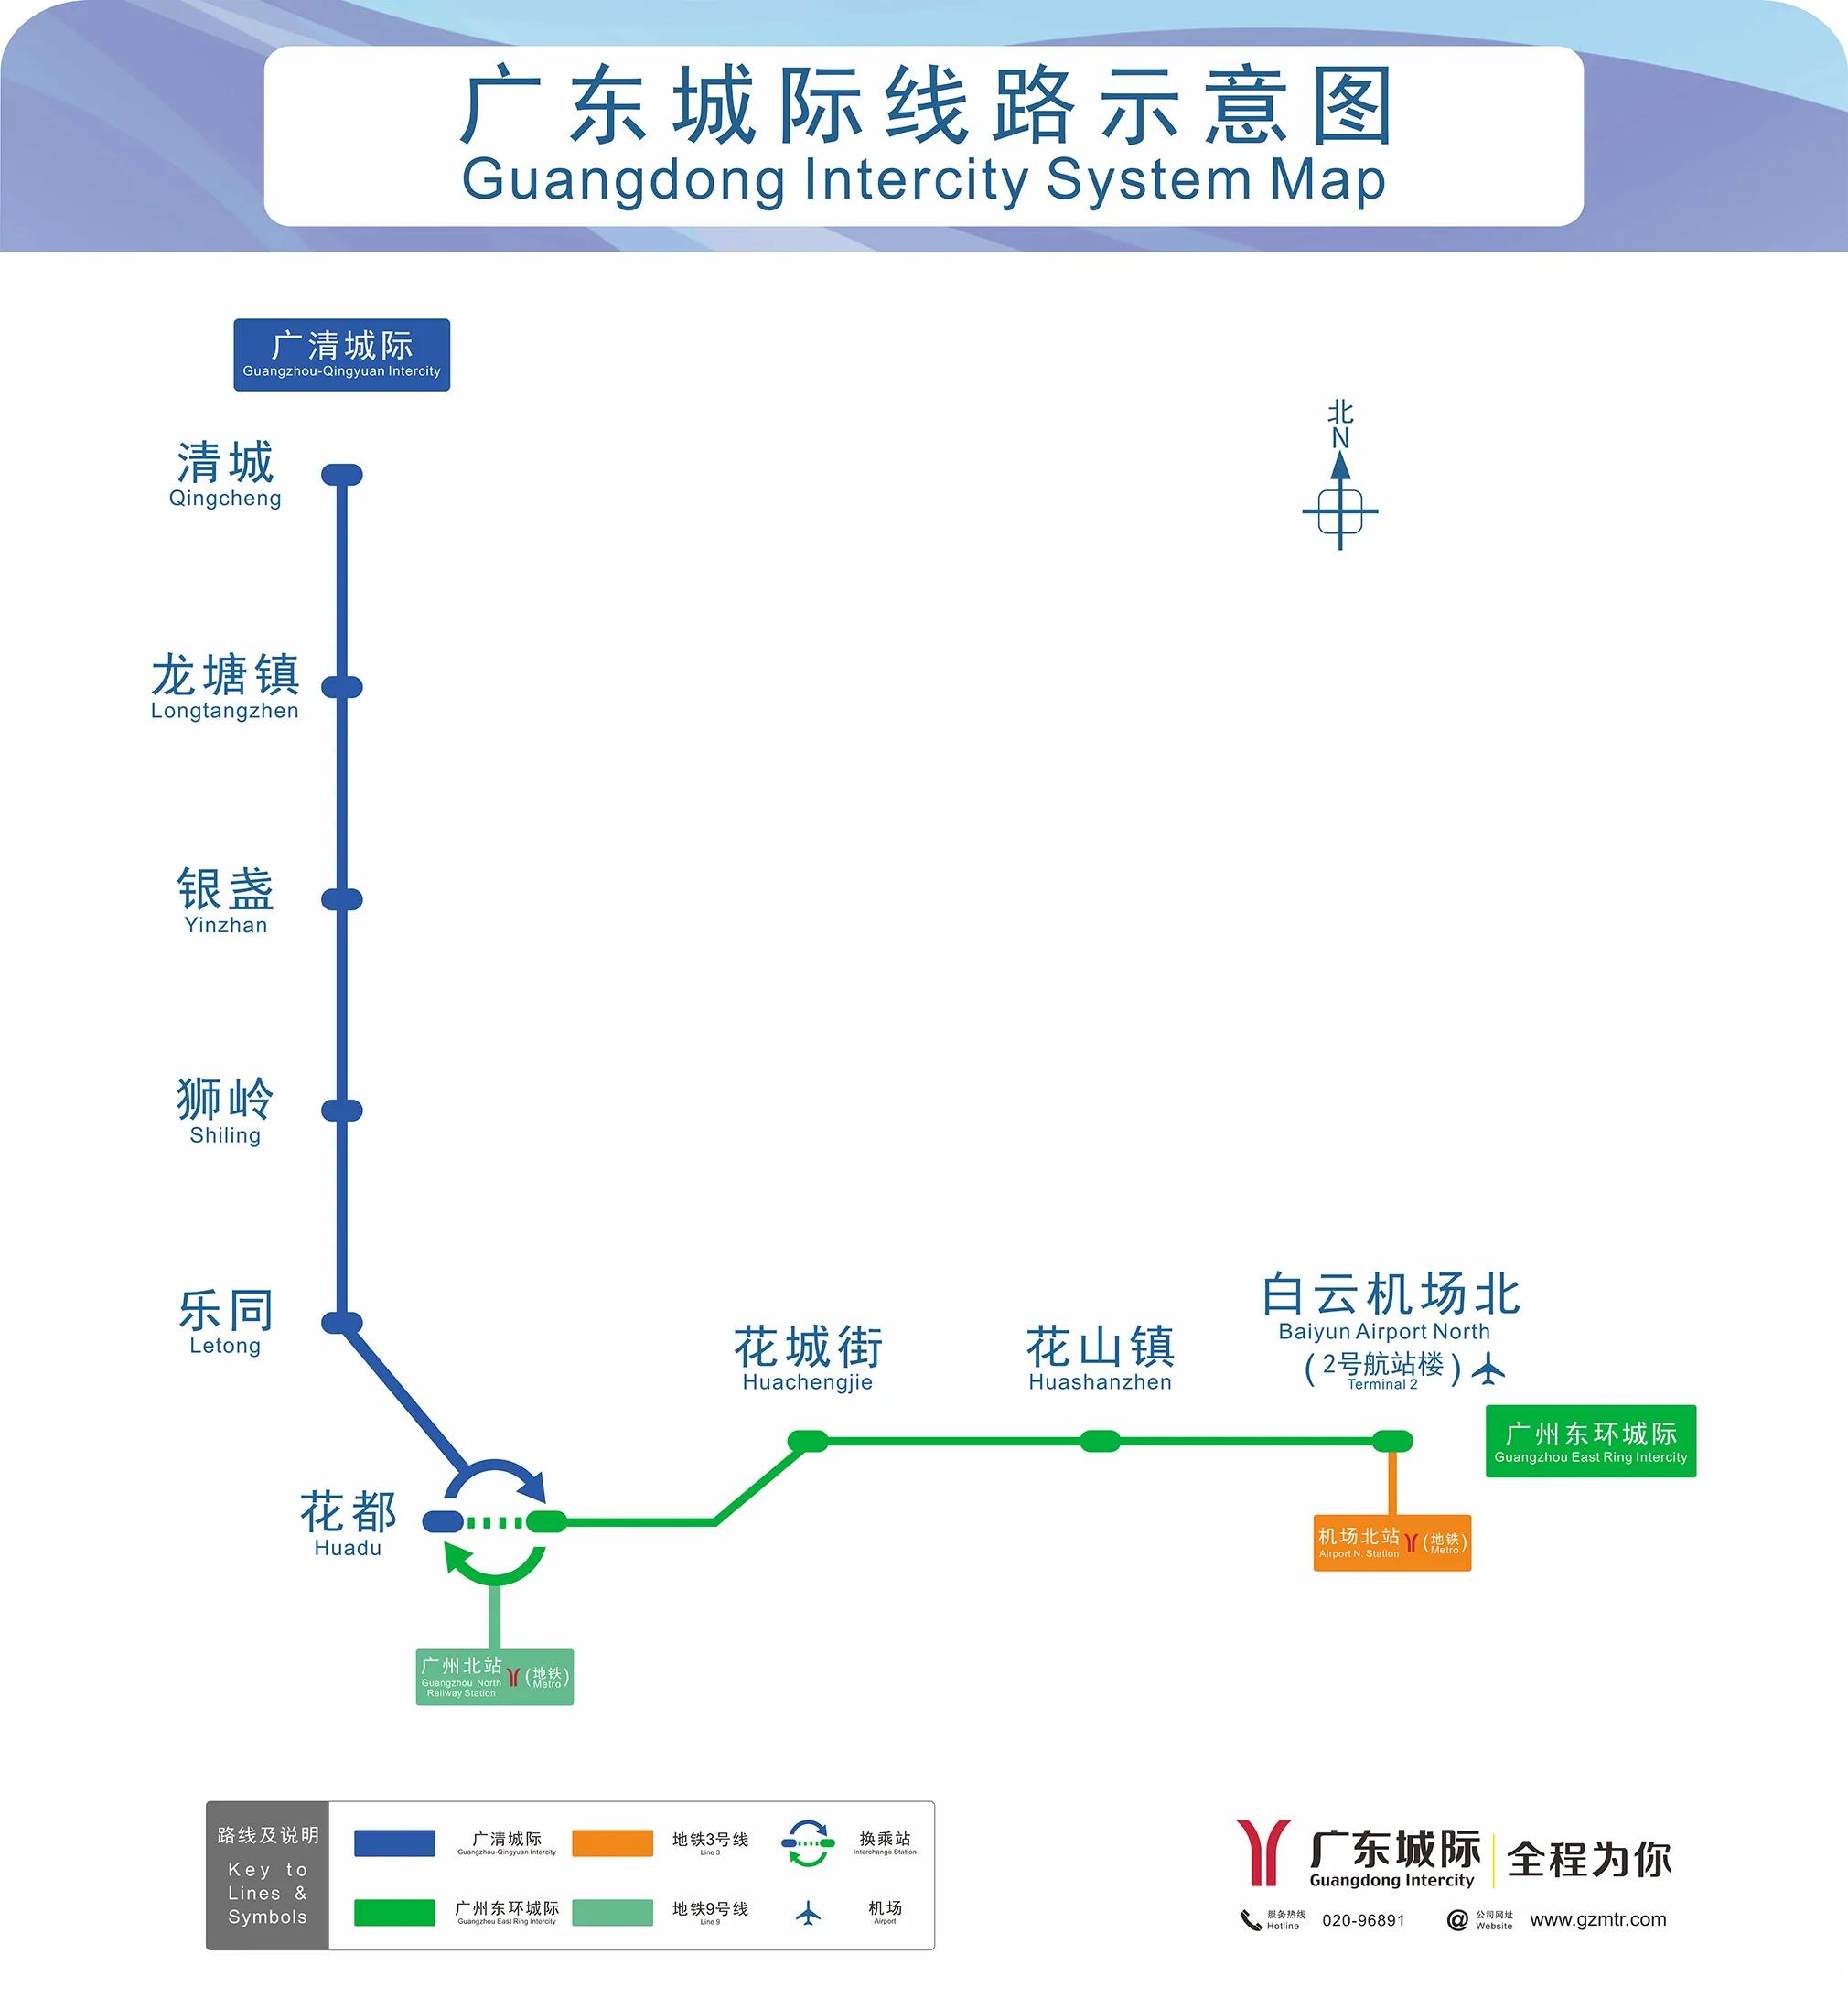 新阶段来临,珠三角佛肇城际和莞惠城际运营权移交广东城际